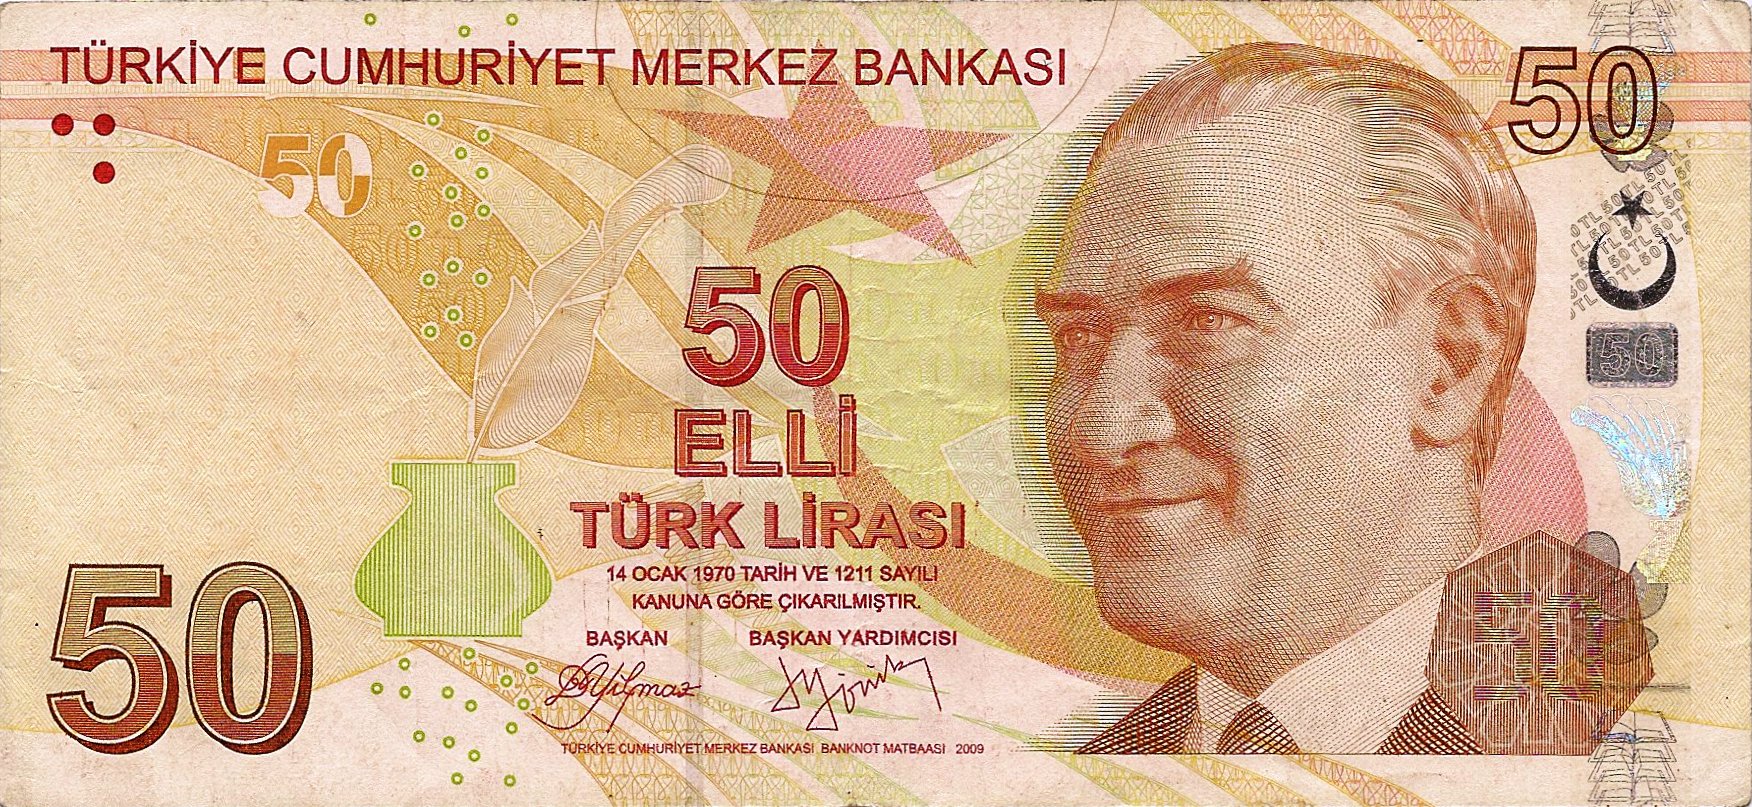 Сможет ли турецкая лира укрепить свои позиции в 2017 году?